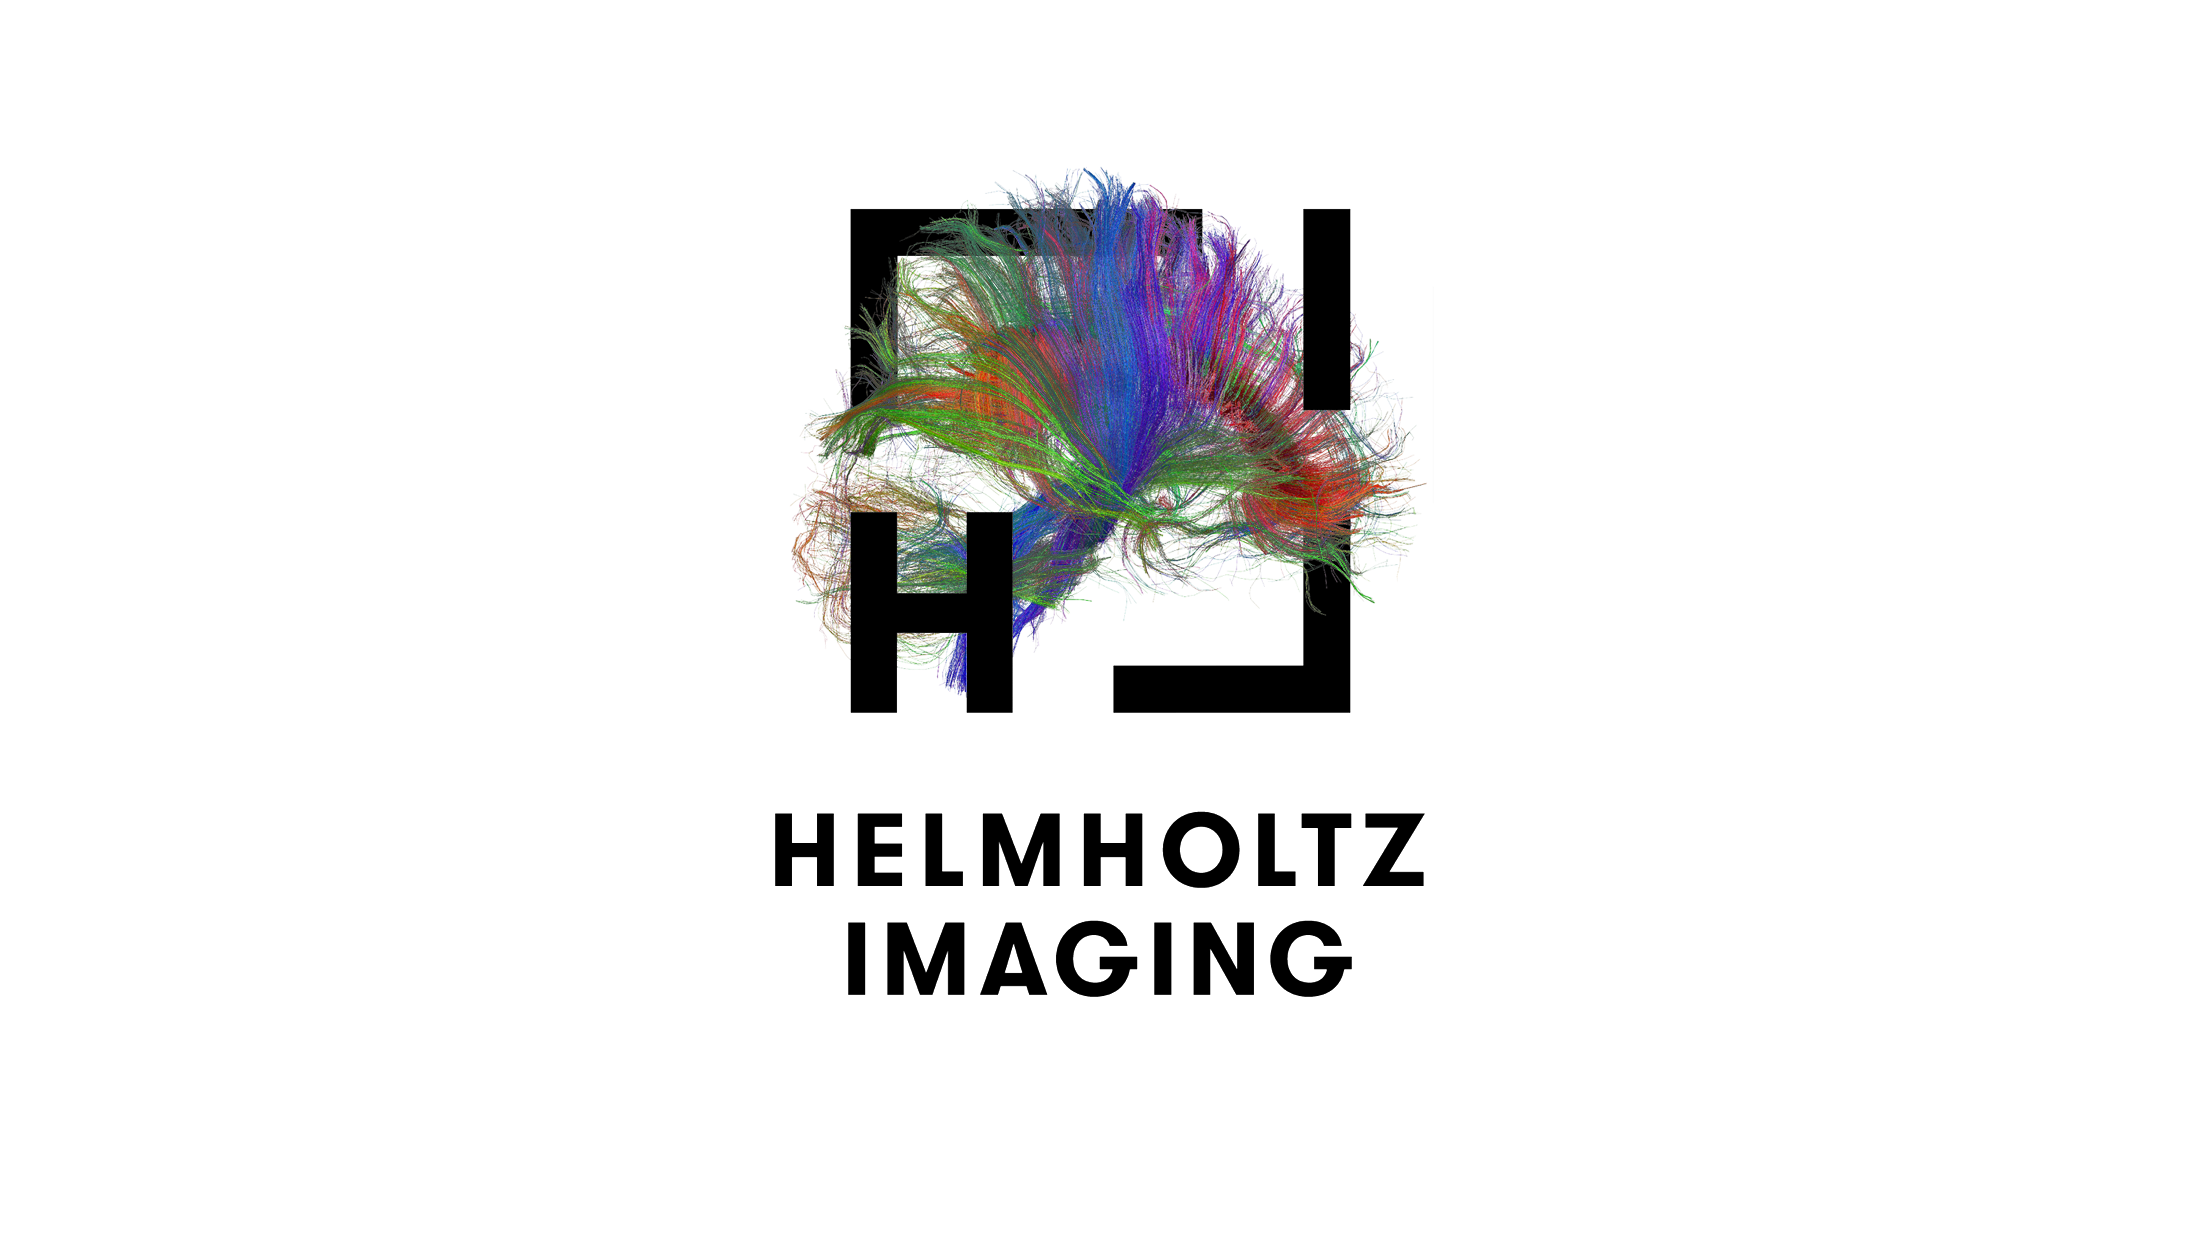 Helmholtz Imaging Image